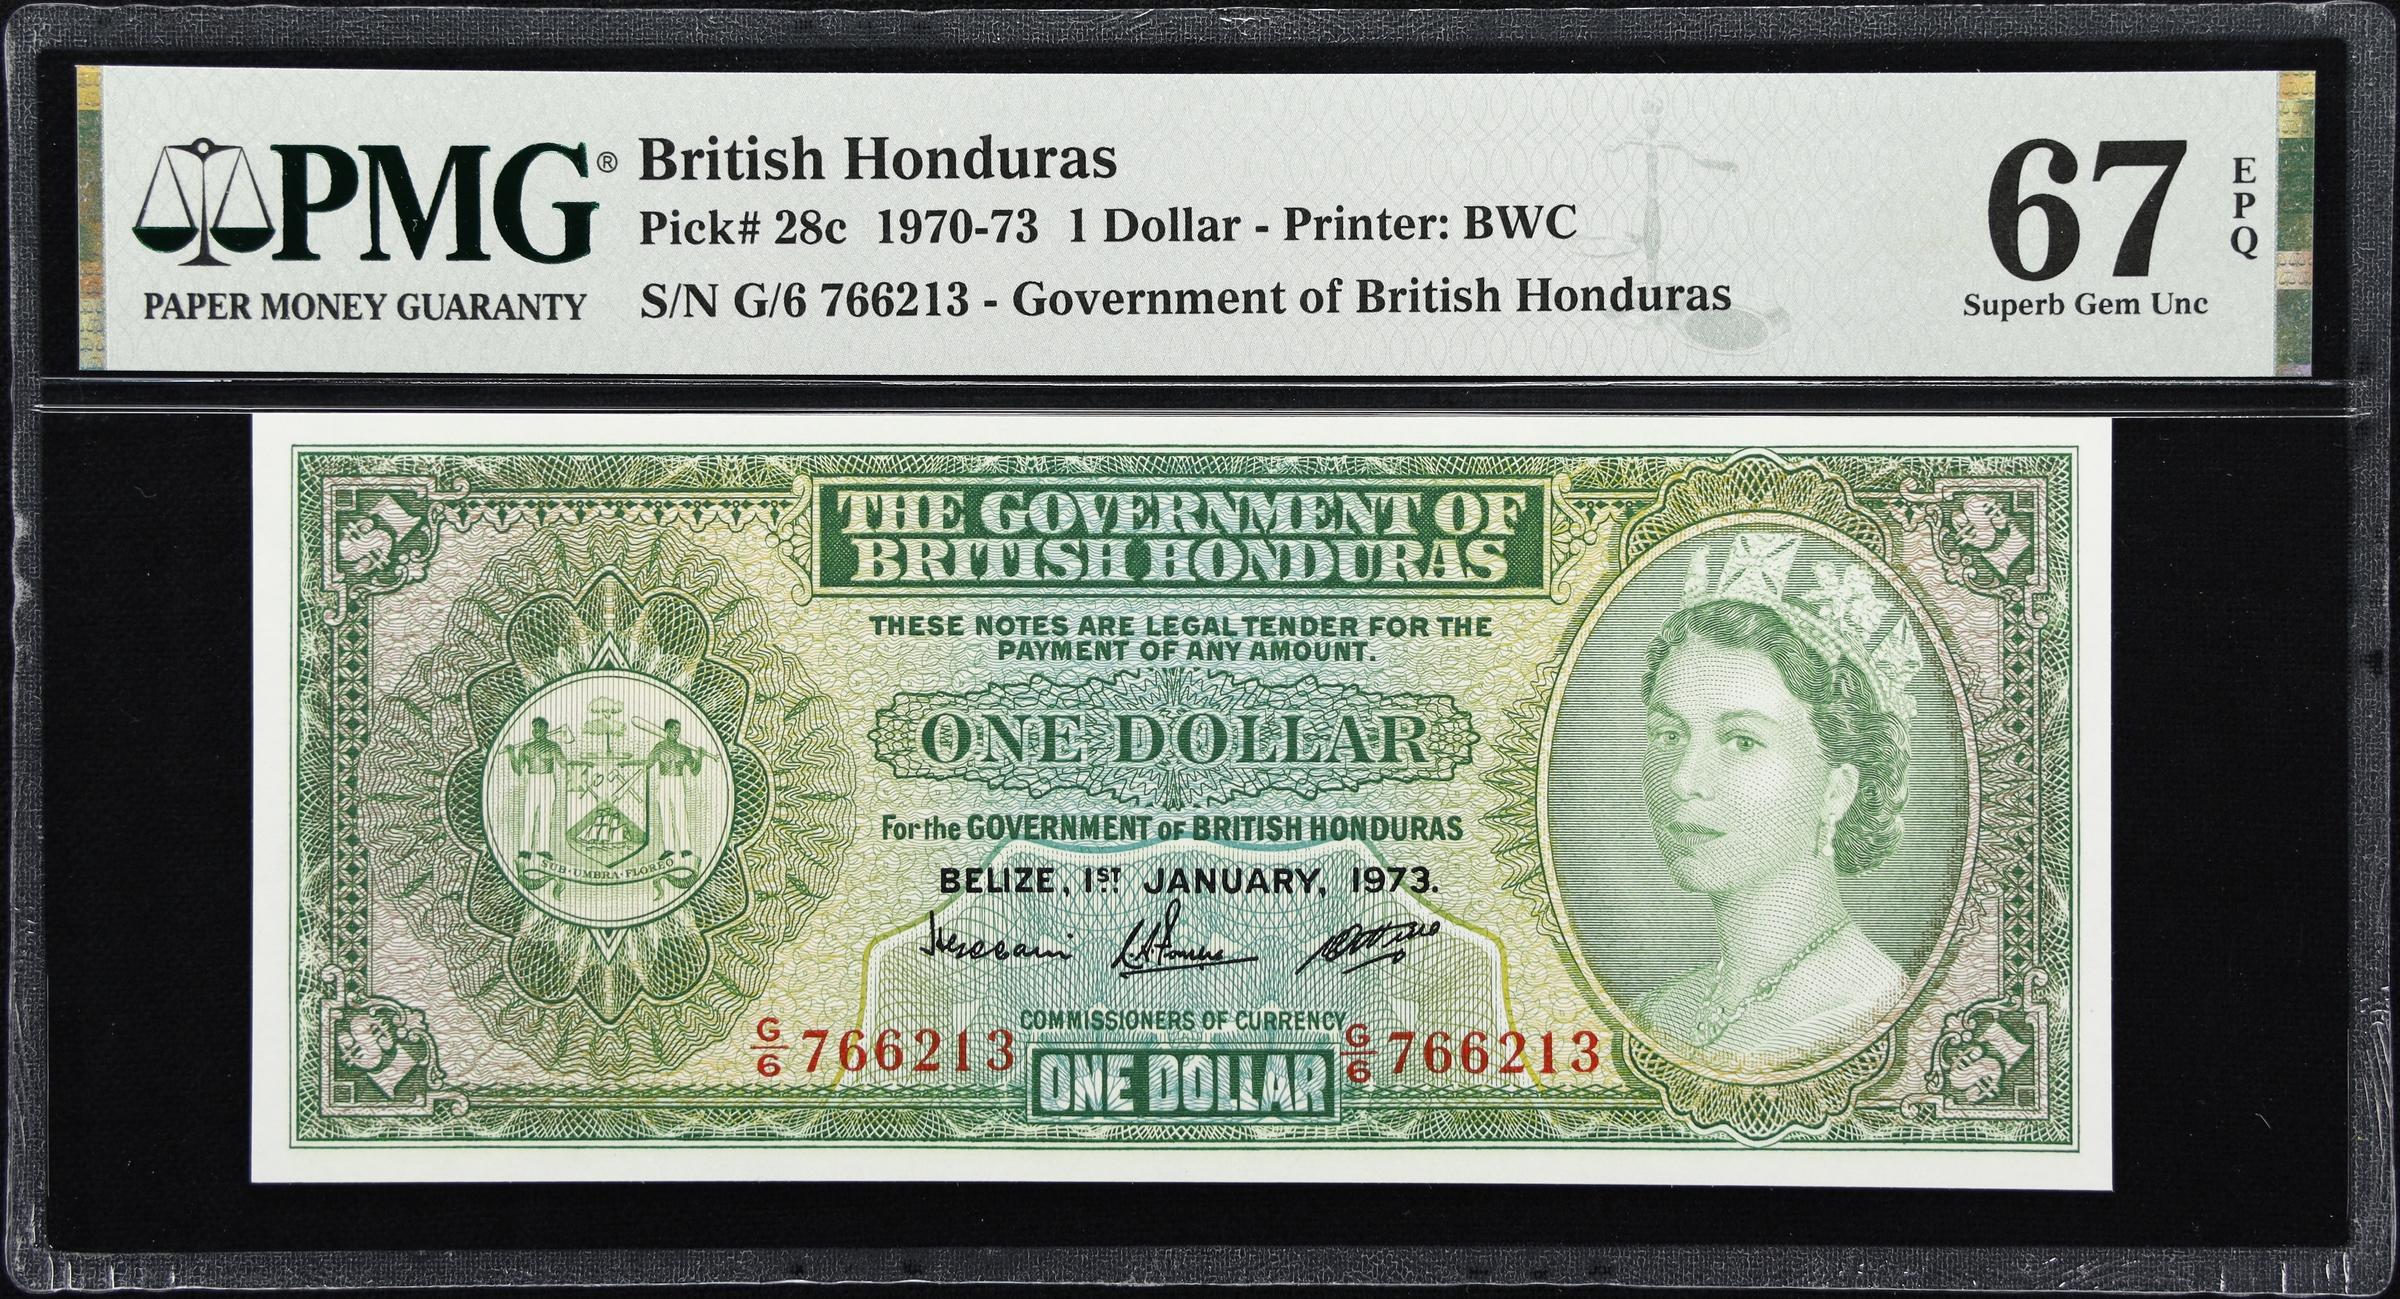 BRITISH HONDURAS. Government of British Honduras. 1 Dollar